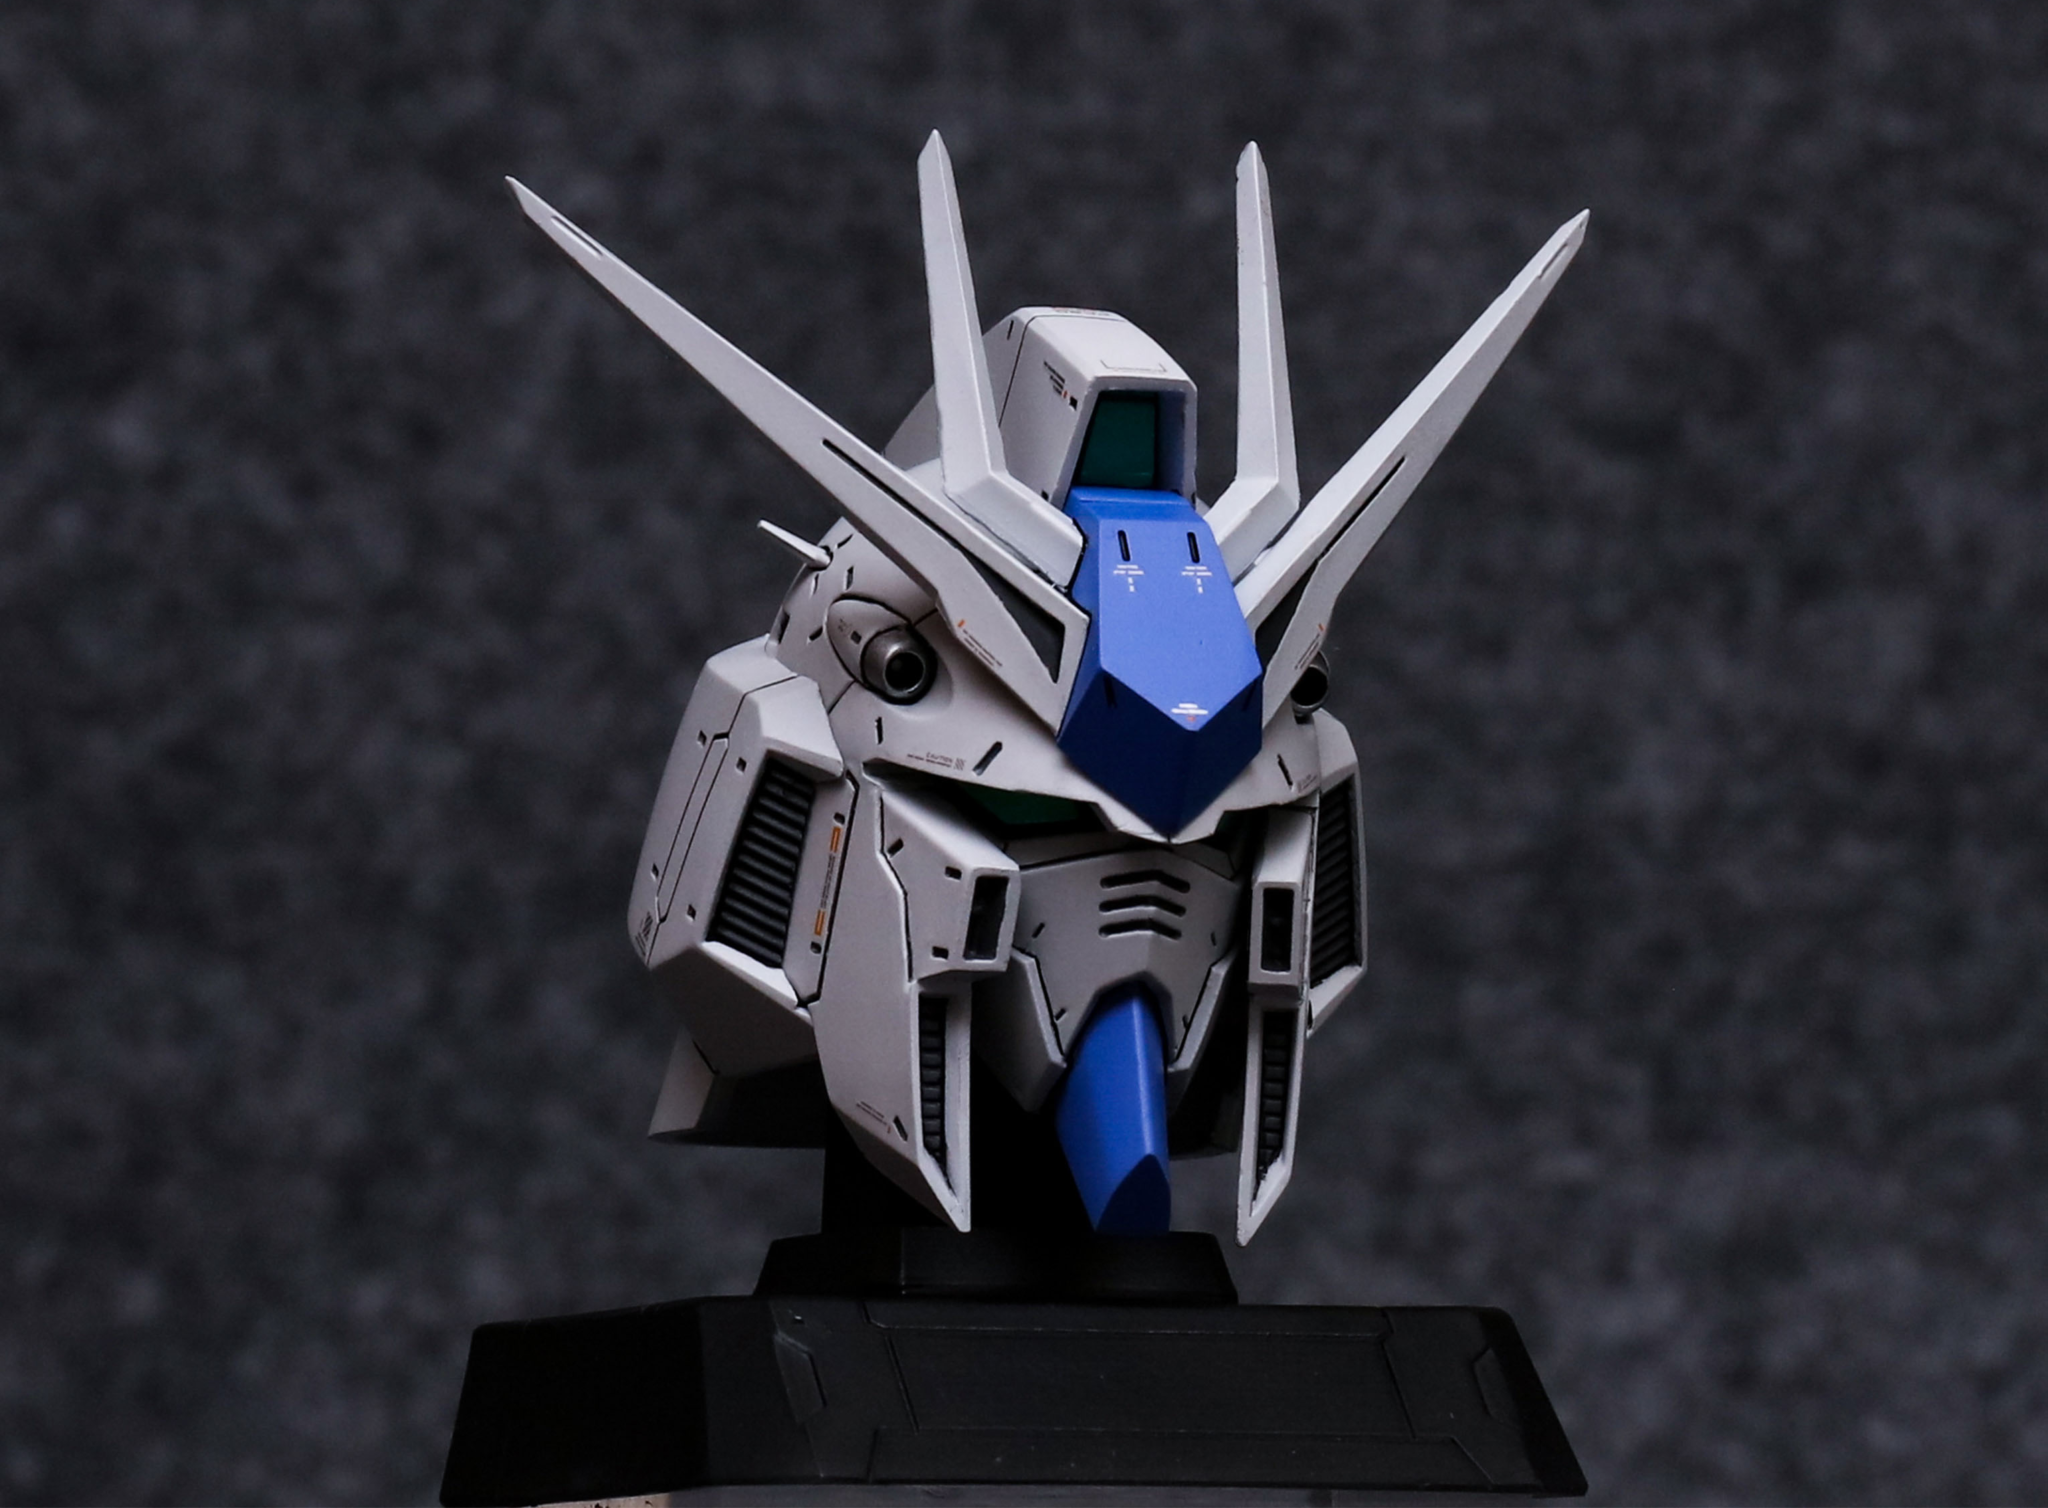 Silveraoks 1:35 Nu & Hi-Nu Gundam Head Bust Full Resin Kit